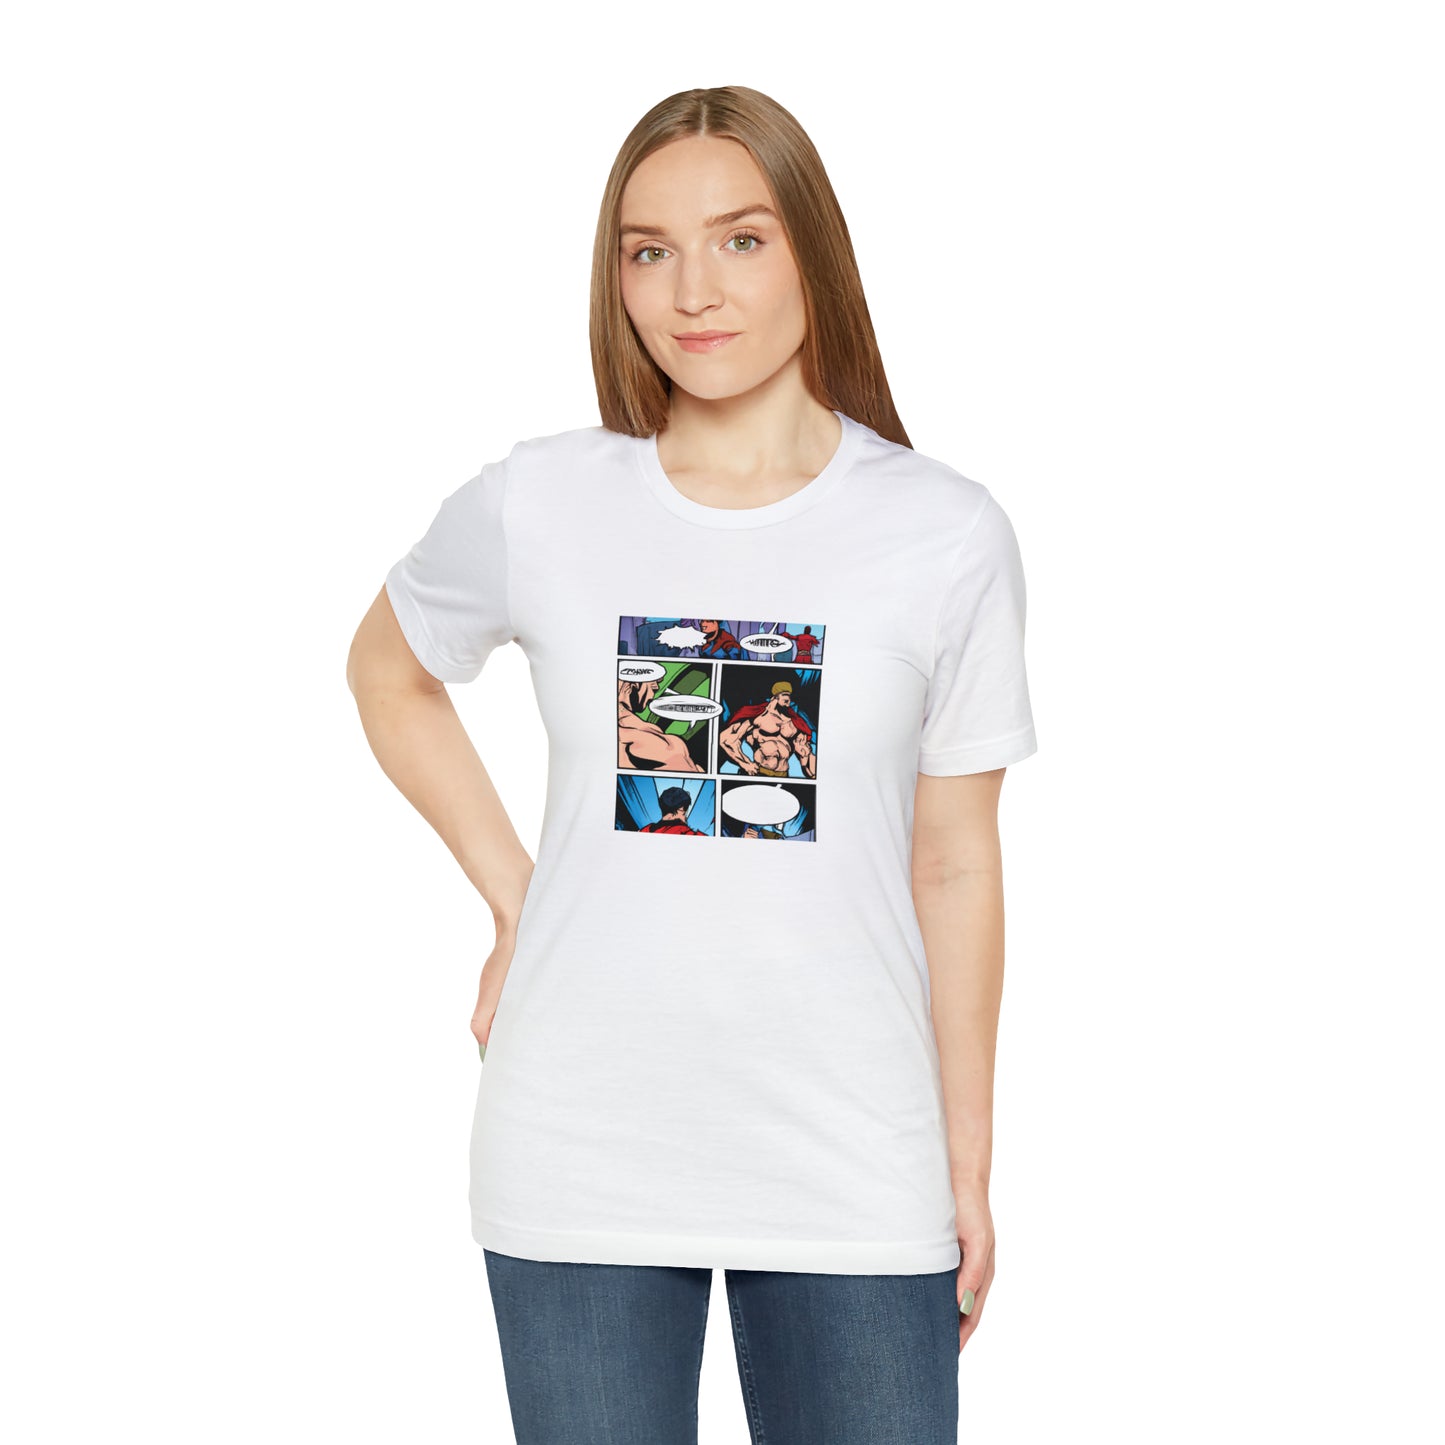 Grace Garrett - Comic Book Collector Tee Shirt